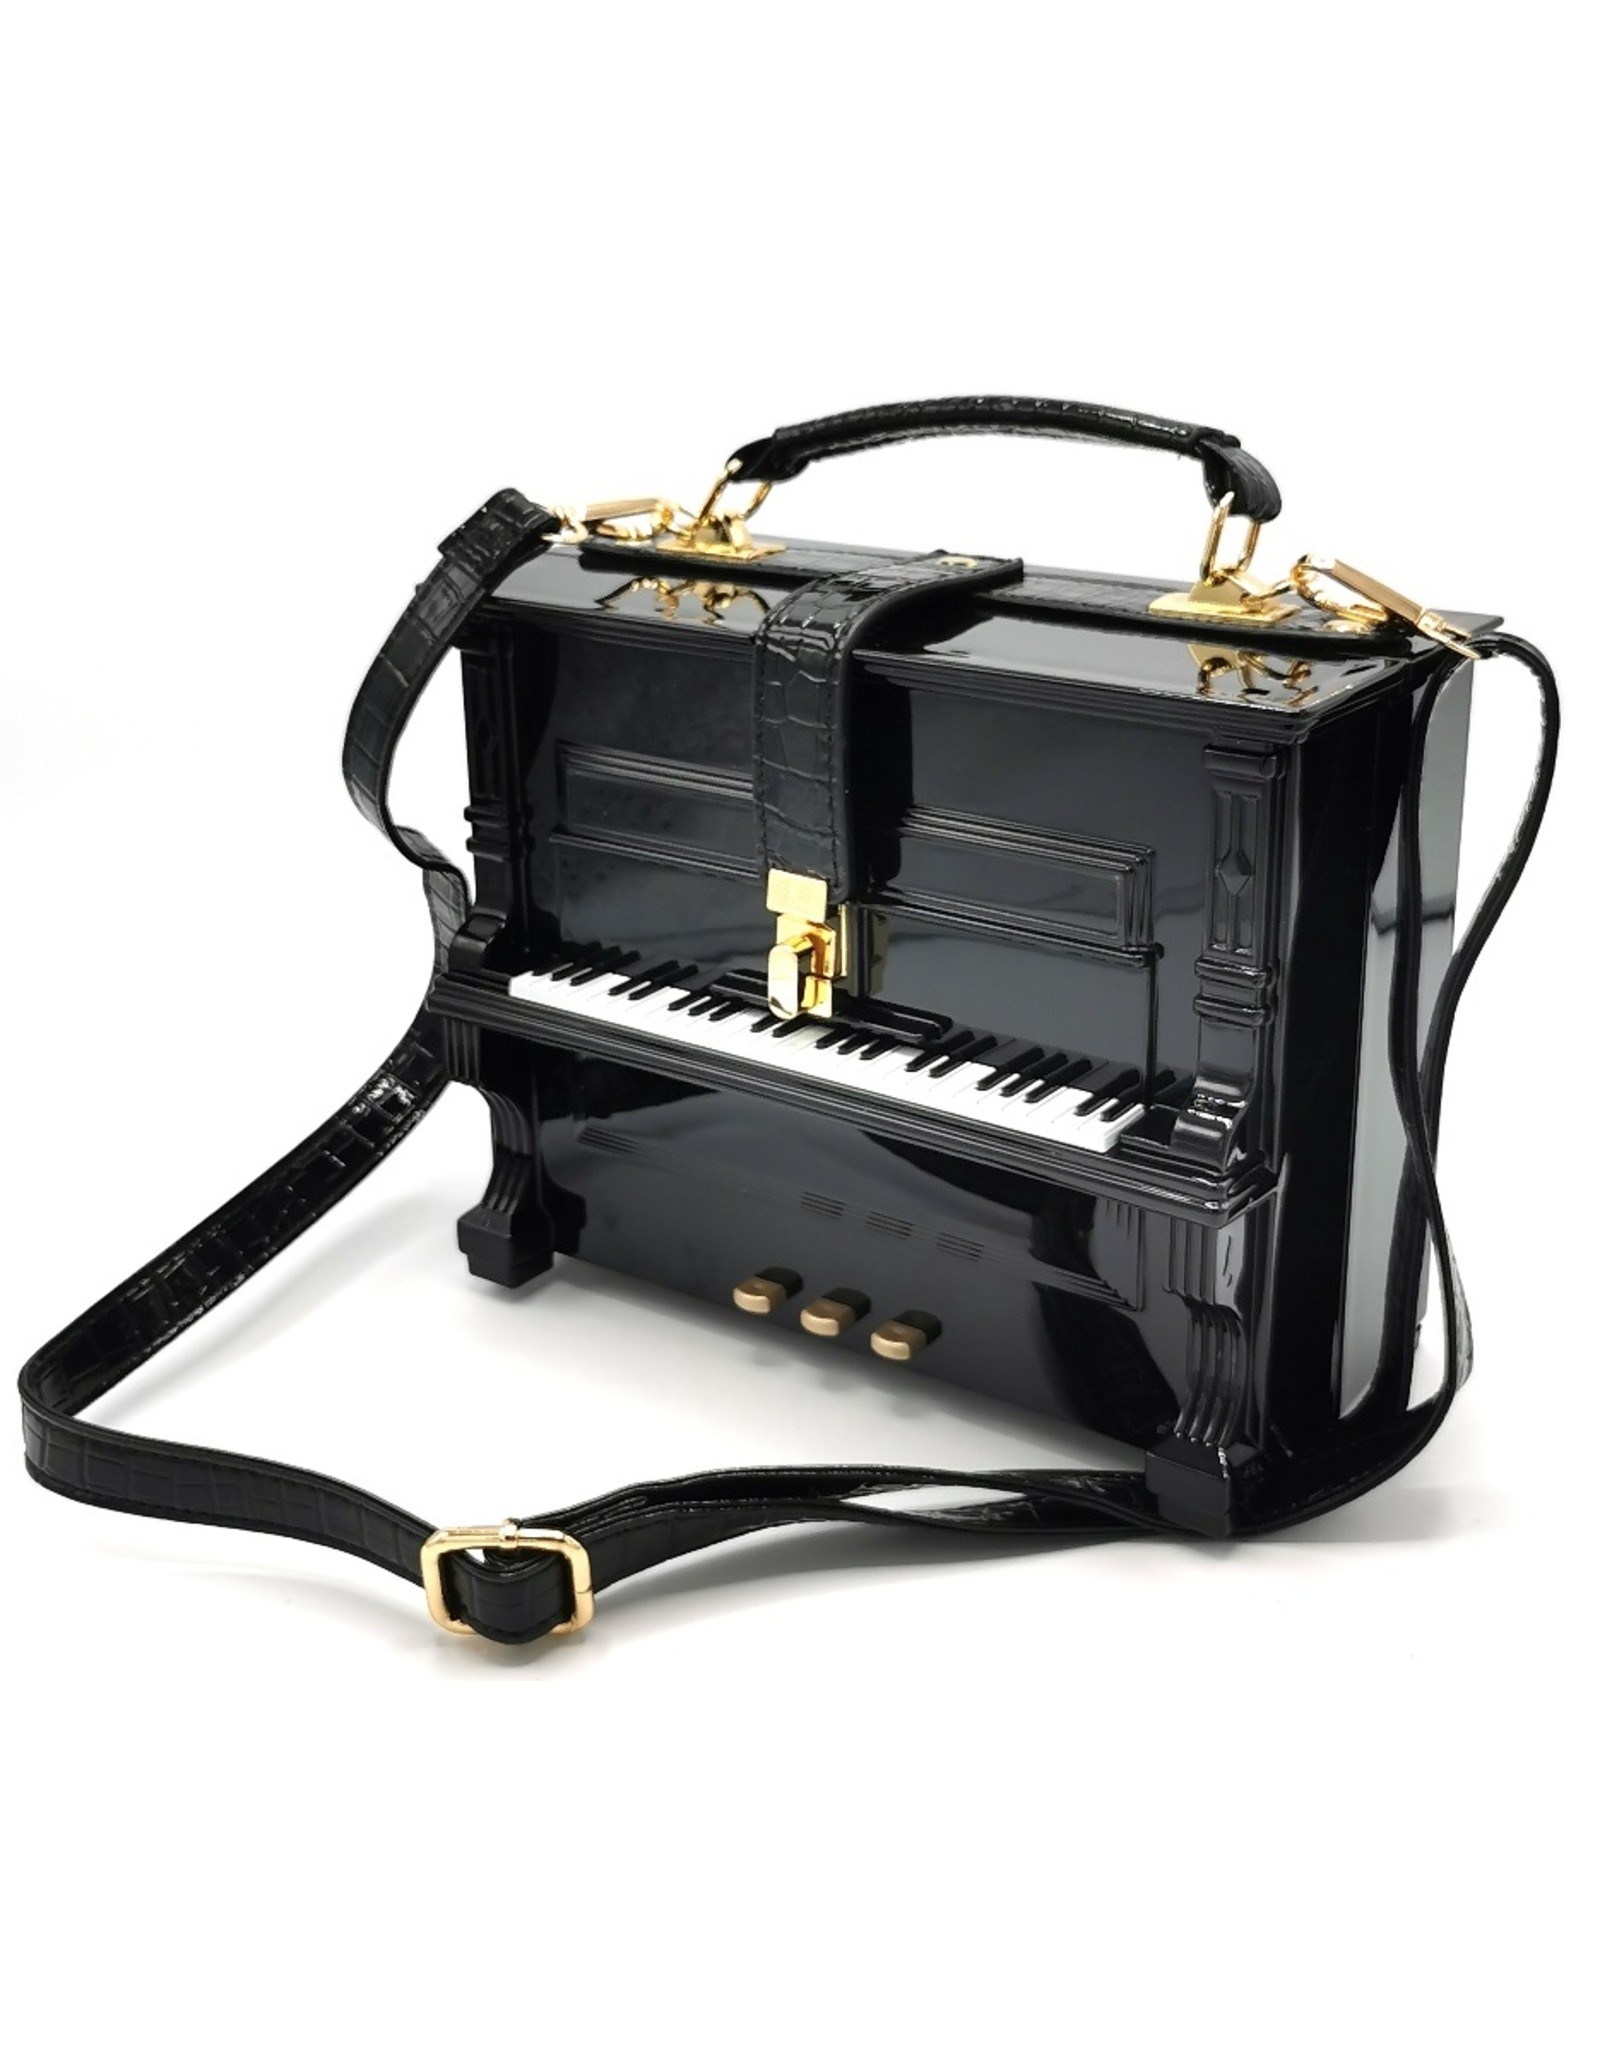 Magic Bags Fantasy bags and wallets - Piano Handbag in the shape of Real Piano black